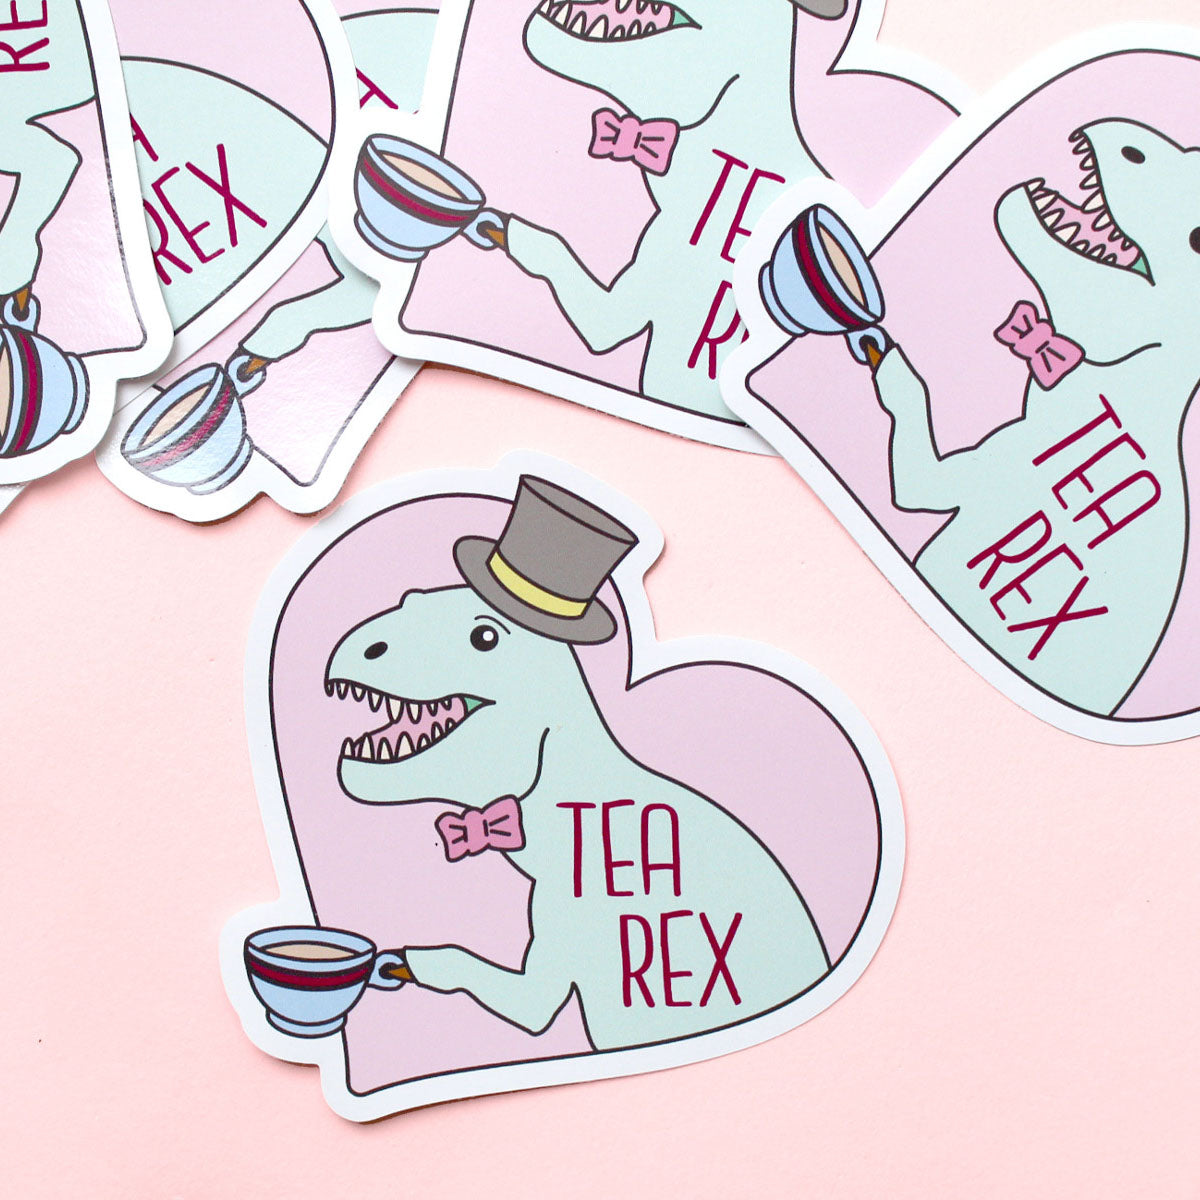 Tea Rex Sticker